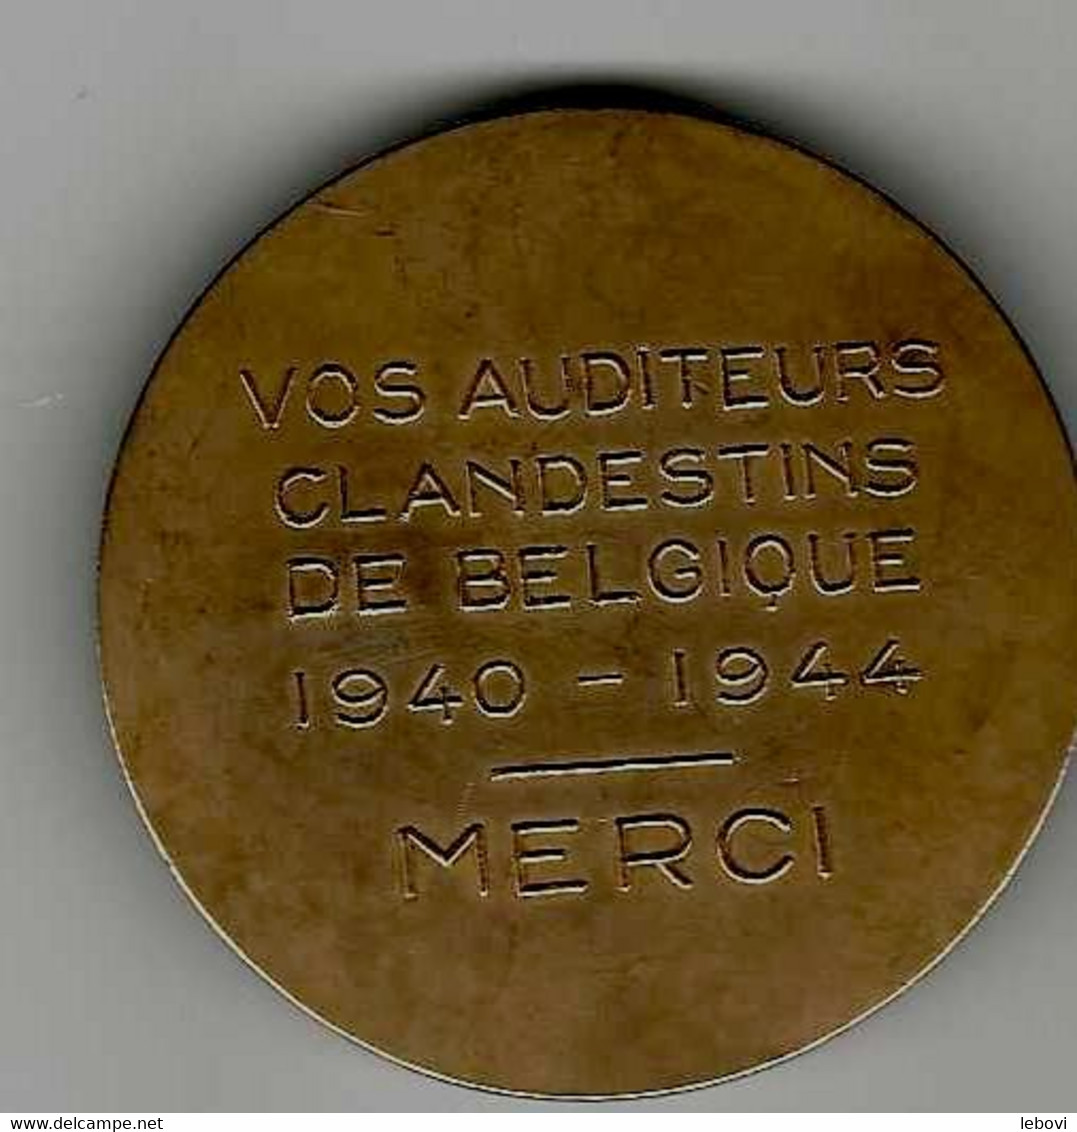 BELGIQUE – AVERS « RENE PAYOT» - REVERS «Vos Auditeurs/clandestins/de Belgique/1940 – 1944/merci » - Unternehmen